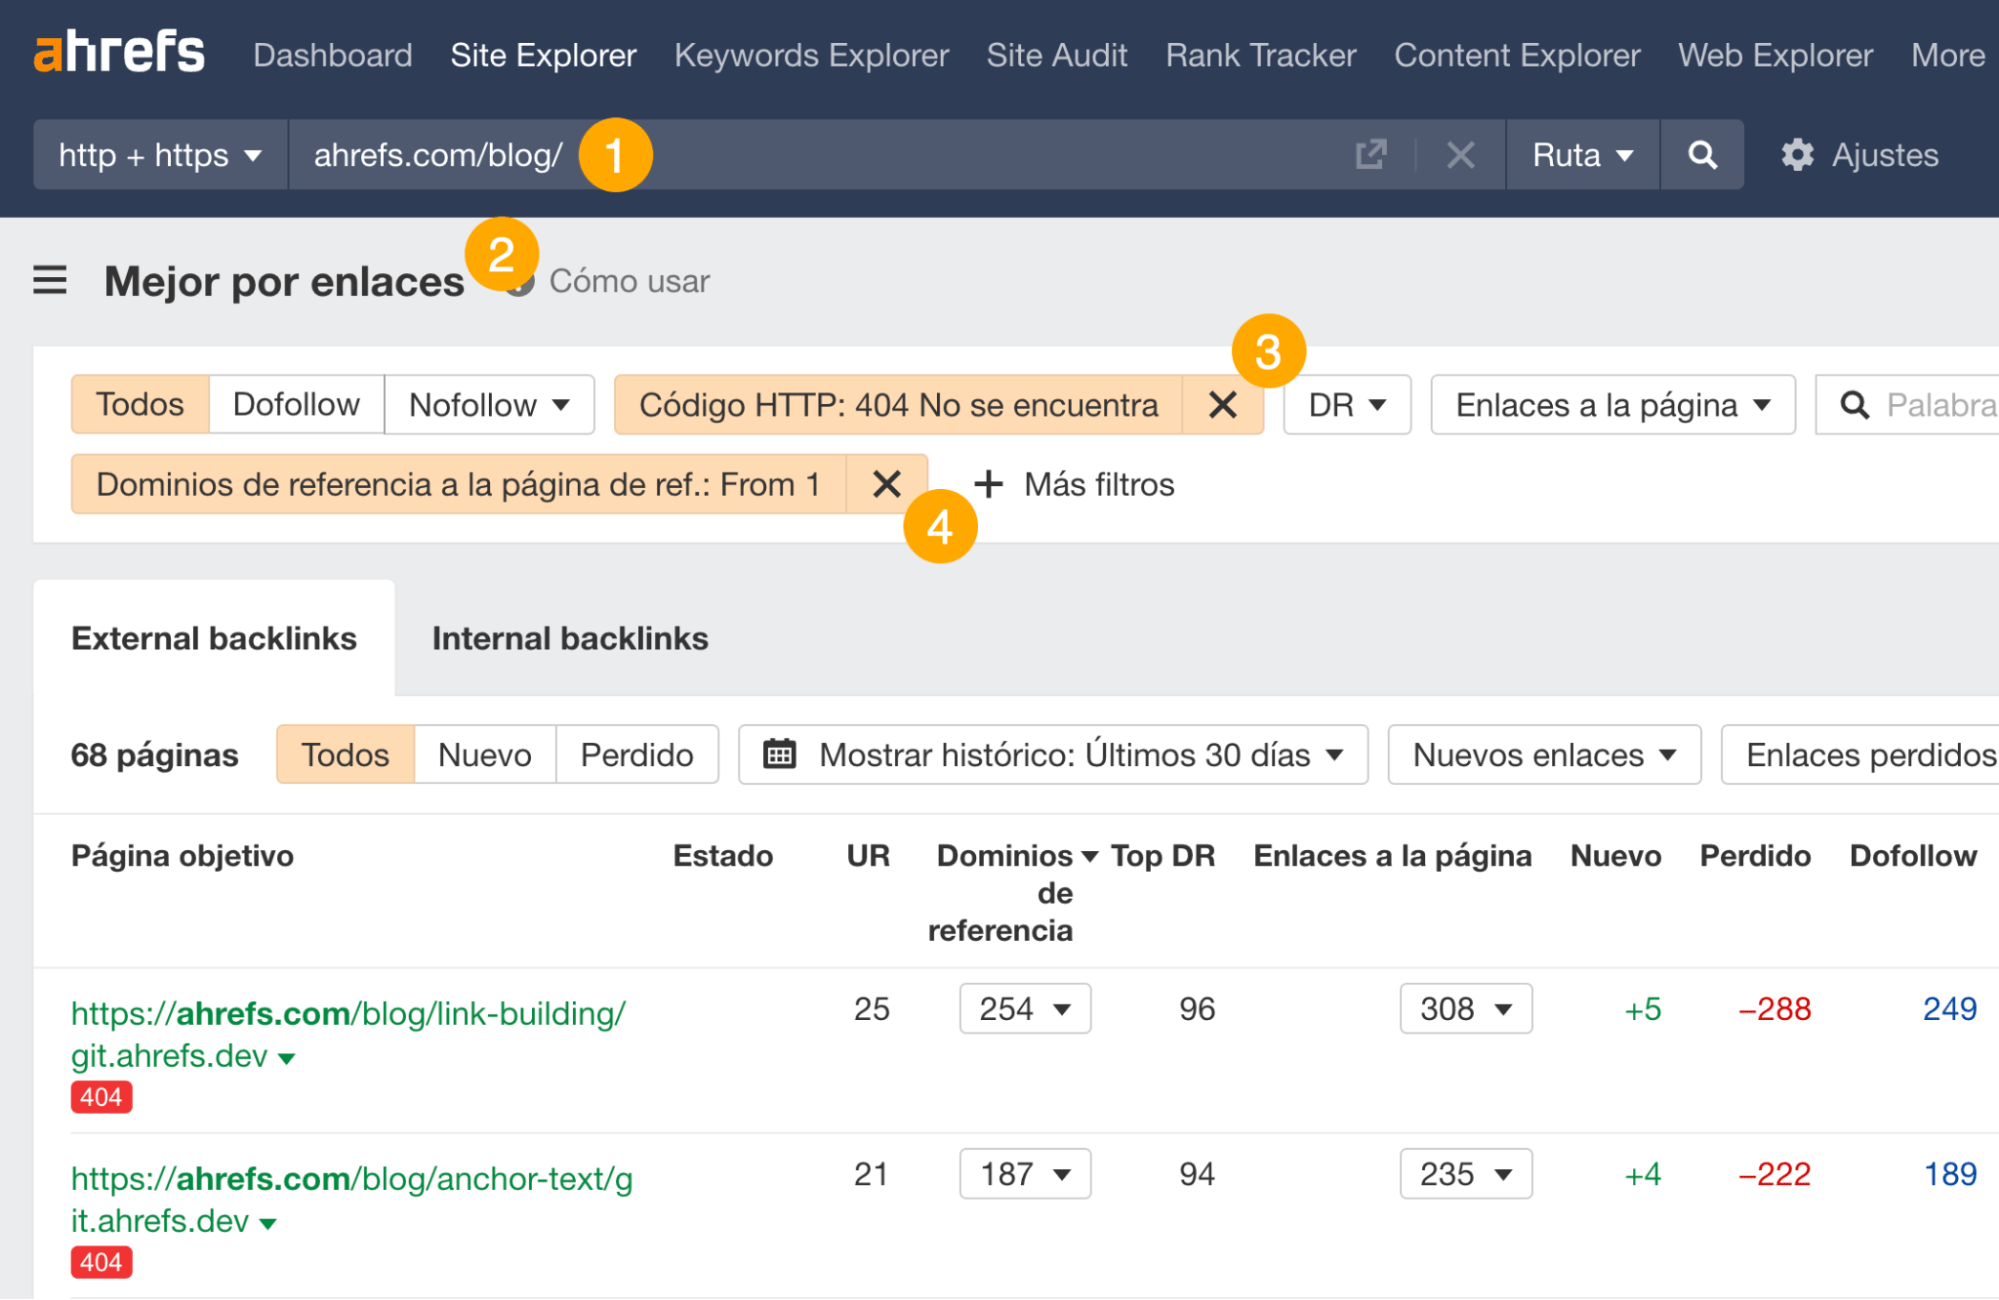 Encontrar páginas 404 con backlinks utilizando el informe Mejor por enlaces en Site Explorer de Ahrefs.